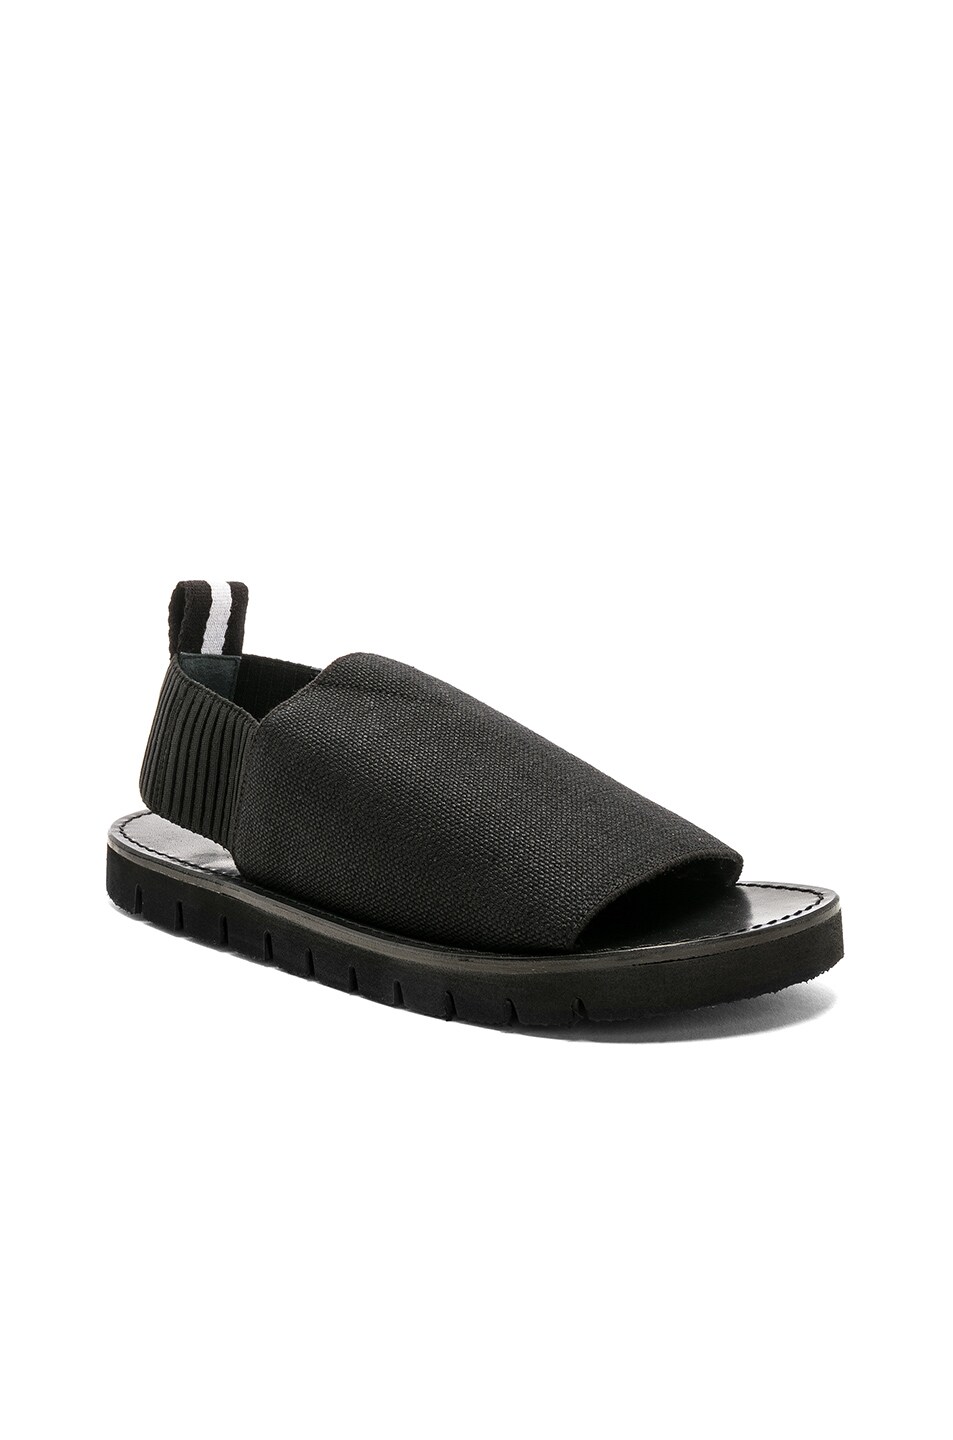 Image 1 of 3.1 phillip lim Elastic Strap Sandals in Black